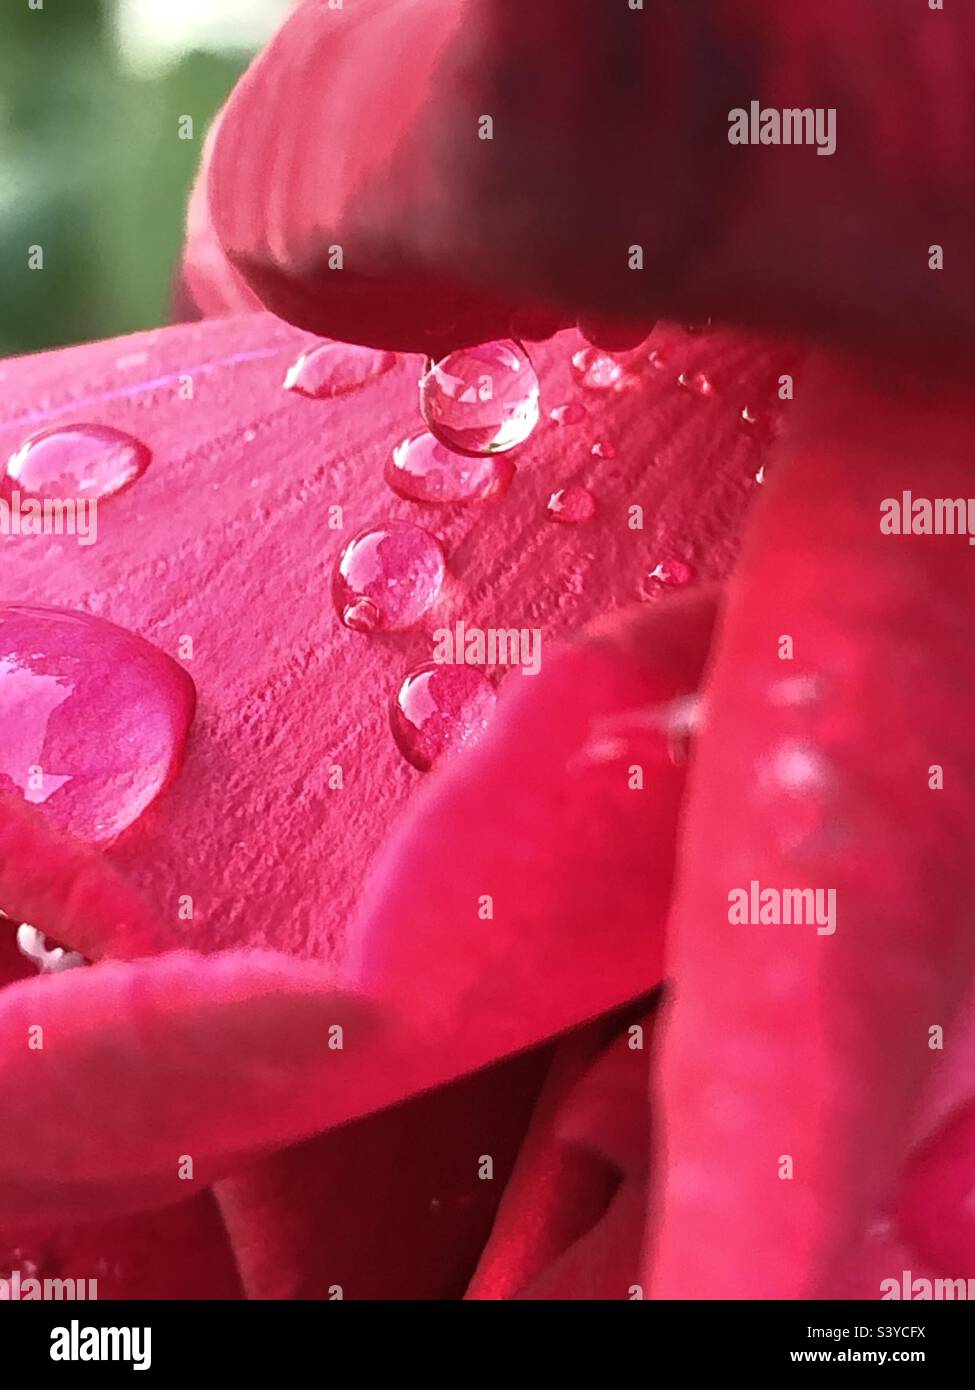 rose petal and water drop Stock Photo